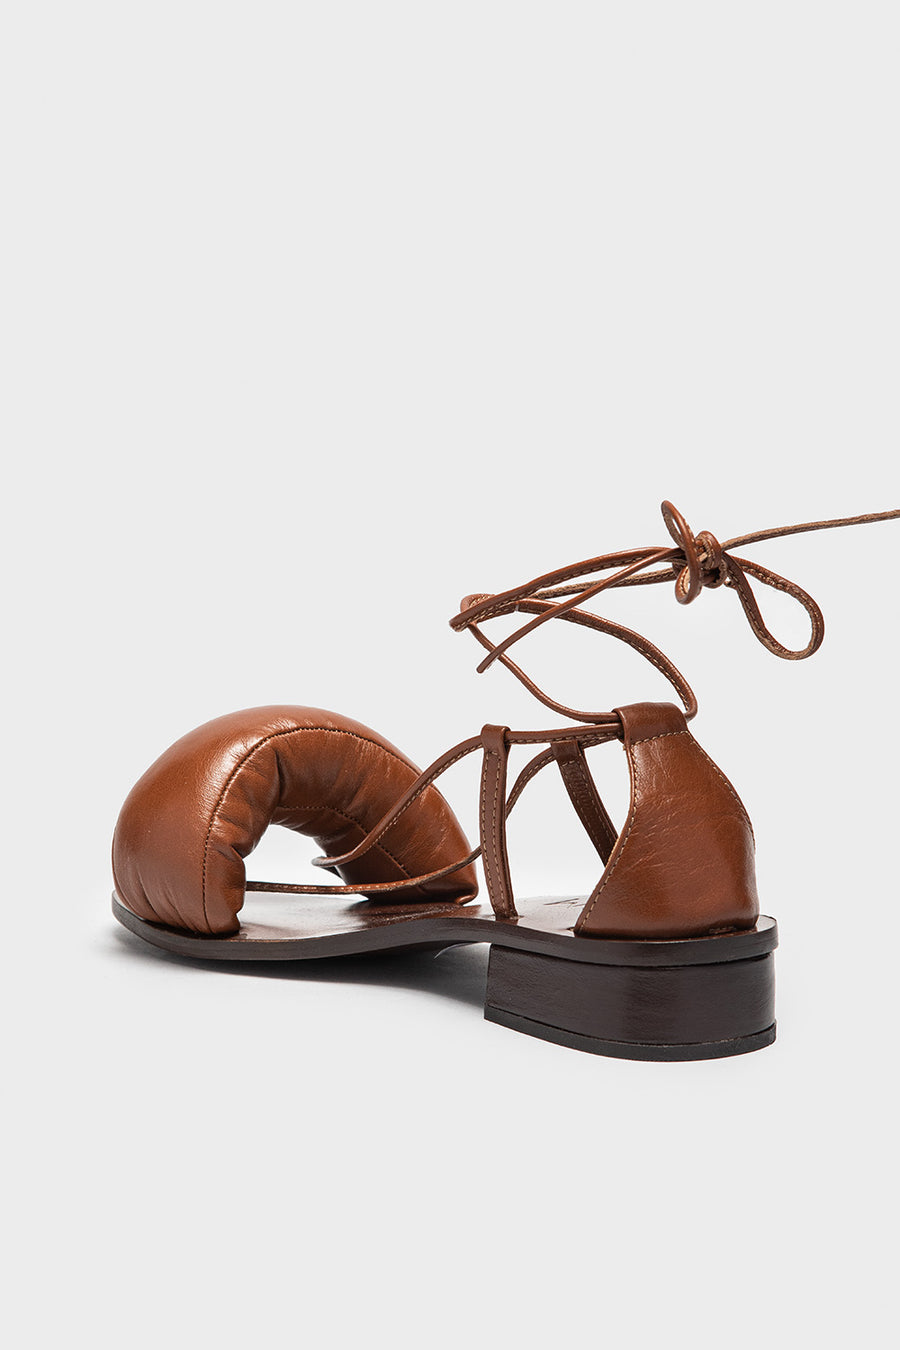 Sandalo Room da donna in pelle color cognac pillow straps